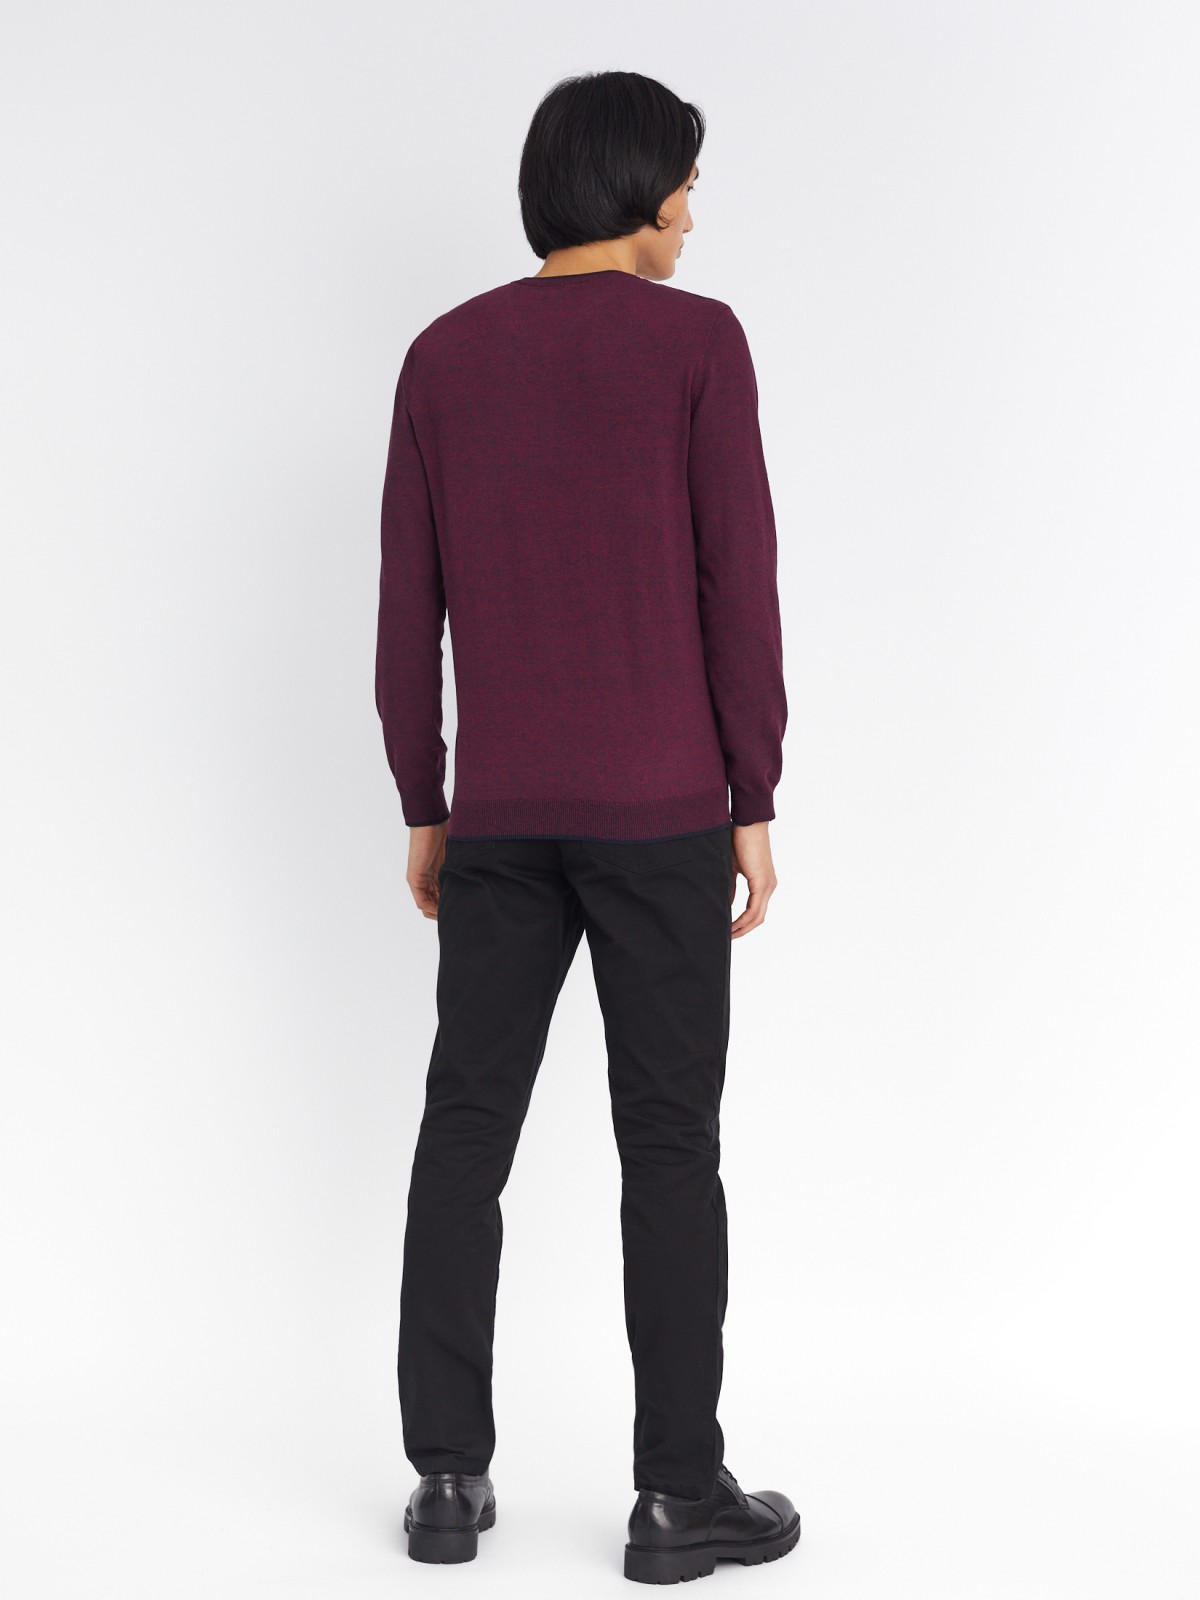 Тонкий трикотажный пуловер с треугольным вырезом и длинным рукавом zolla 213336165022, цвет бордо, размер M - фото 6